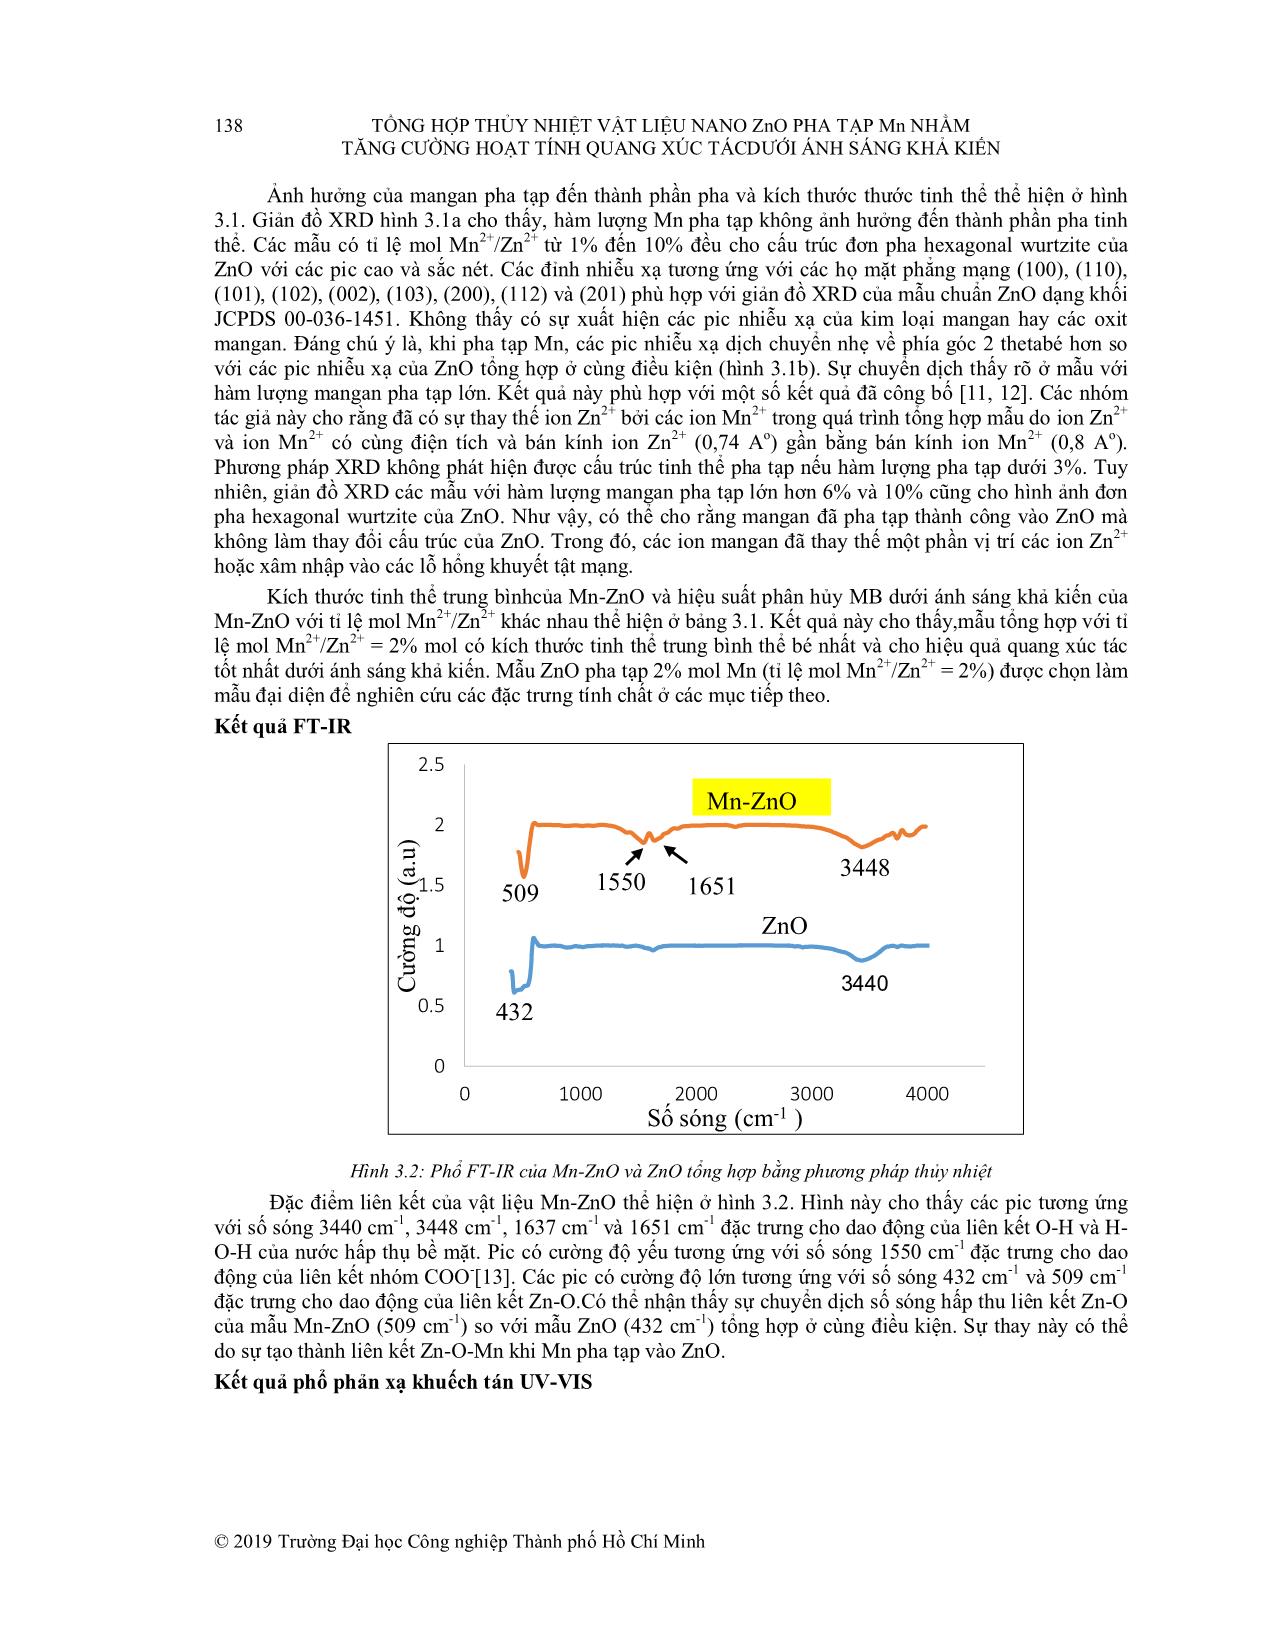 Tổng hợp thủy nhiệt vật liệu nano ZnO pha tạp Mn nhằm tăng cường hoạt tính quang xúc tác dưới ánh sáng khả kiến trang 4